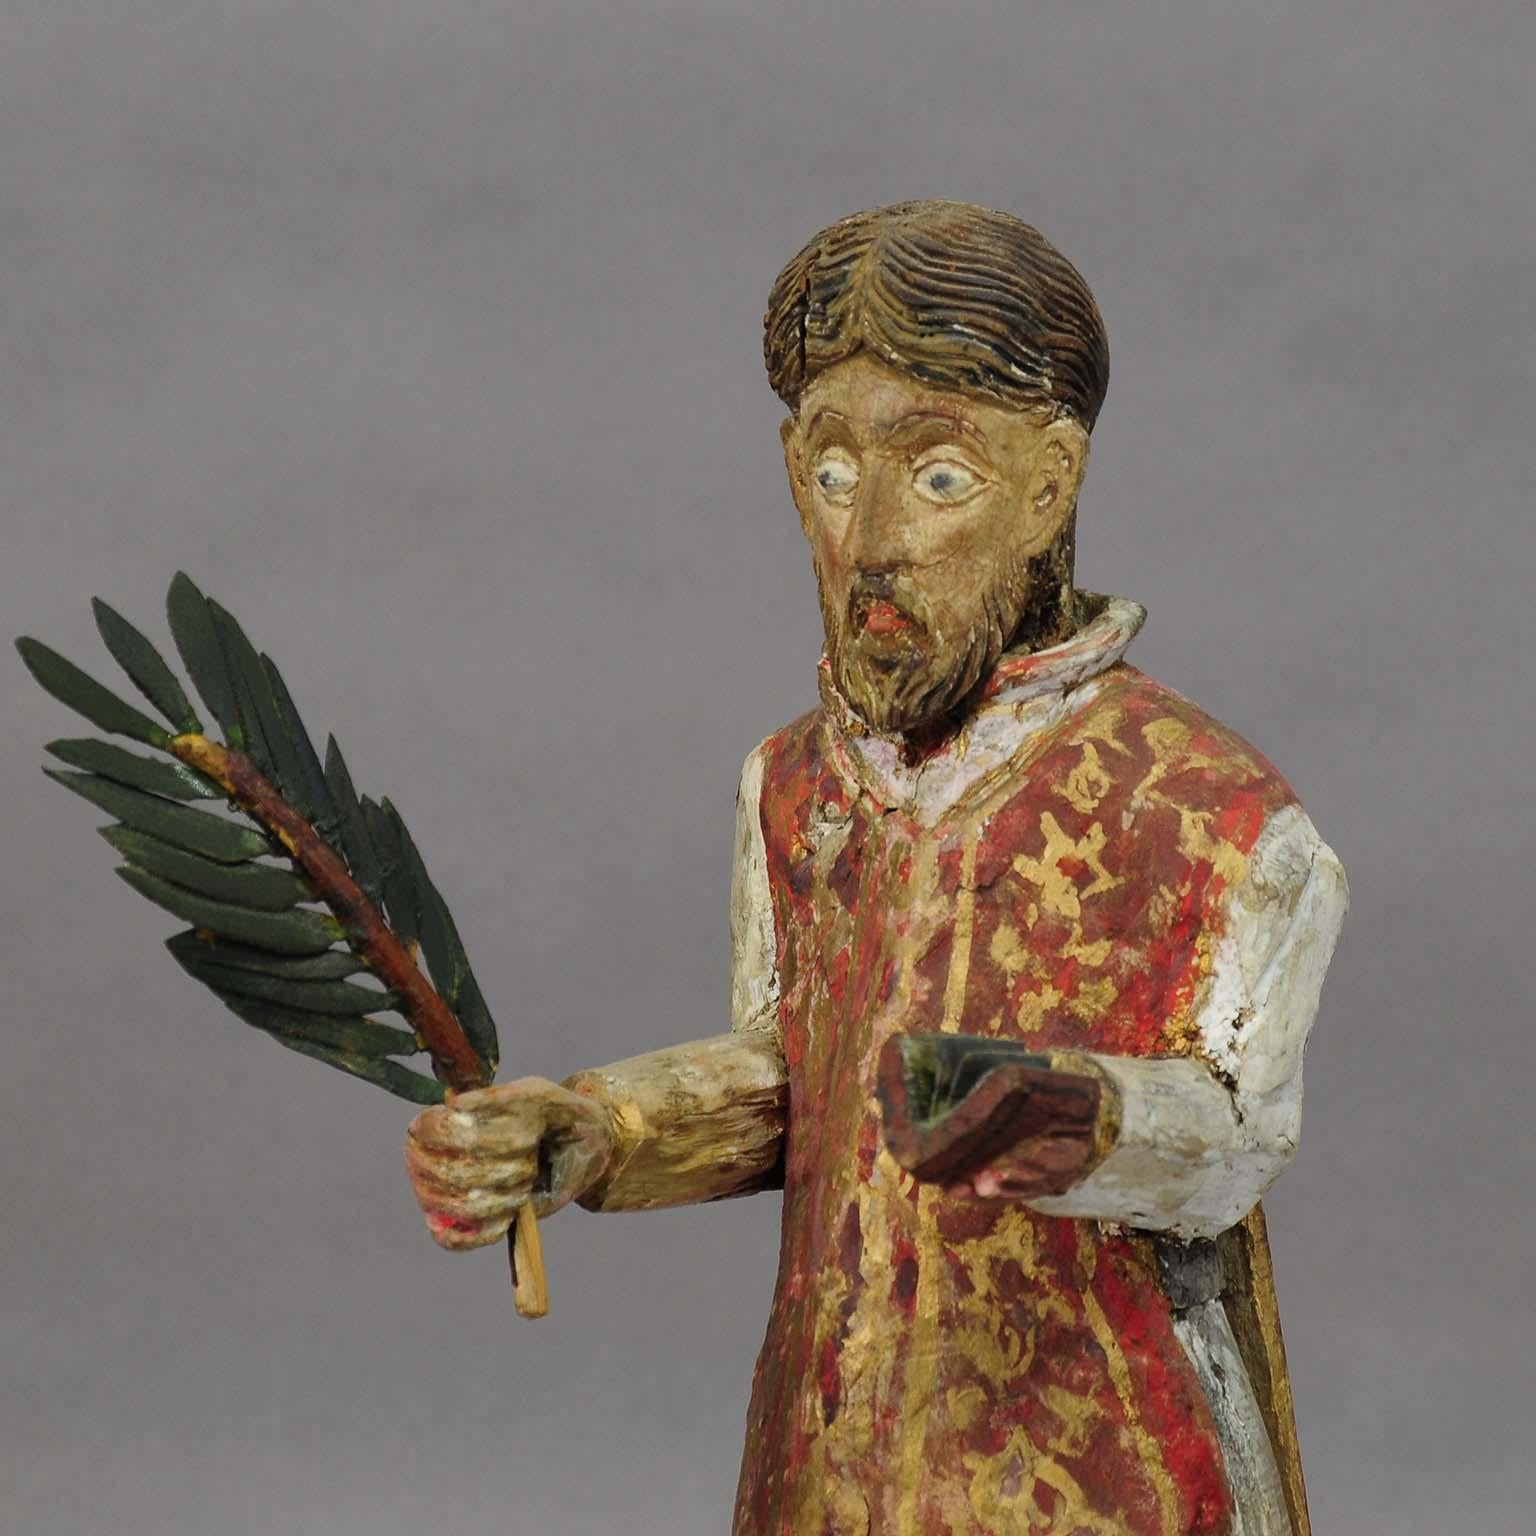 Holzskulptur eines Heiligen, geschnitzt, um 1850

Eine wunderschön handgeschnitzte und handbemalte Skulptur eines Heiligen mit einem Palmzweig. Sie ist wahrscheinlich in armenischer oder georgischer Handwerkskunst um 1850